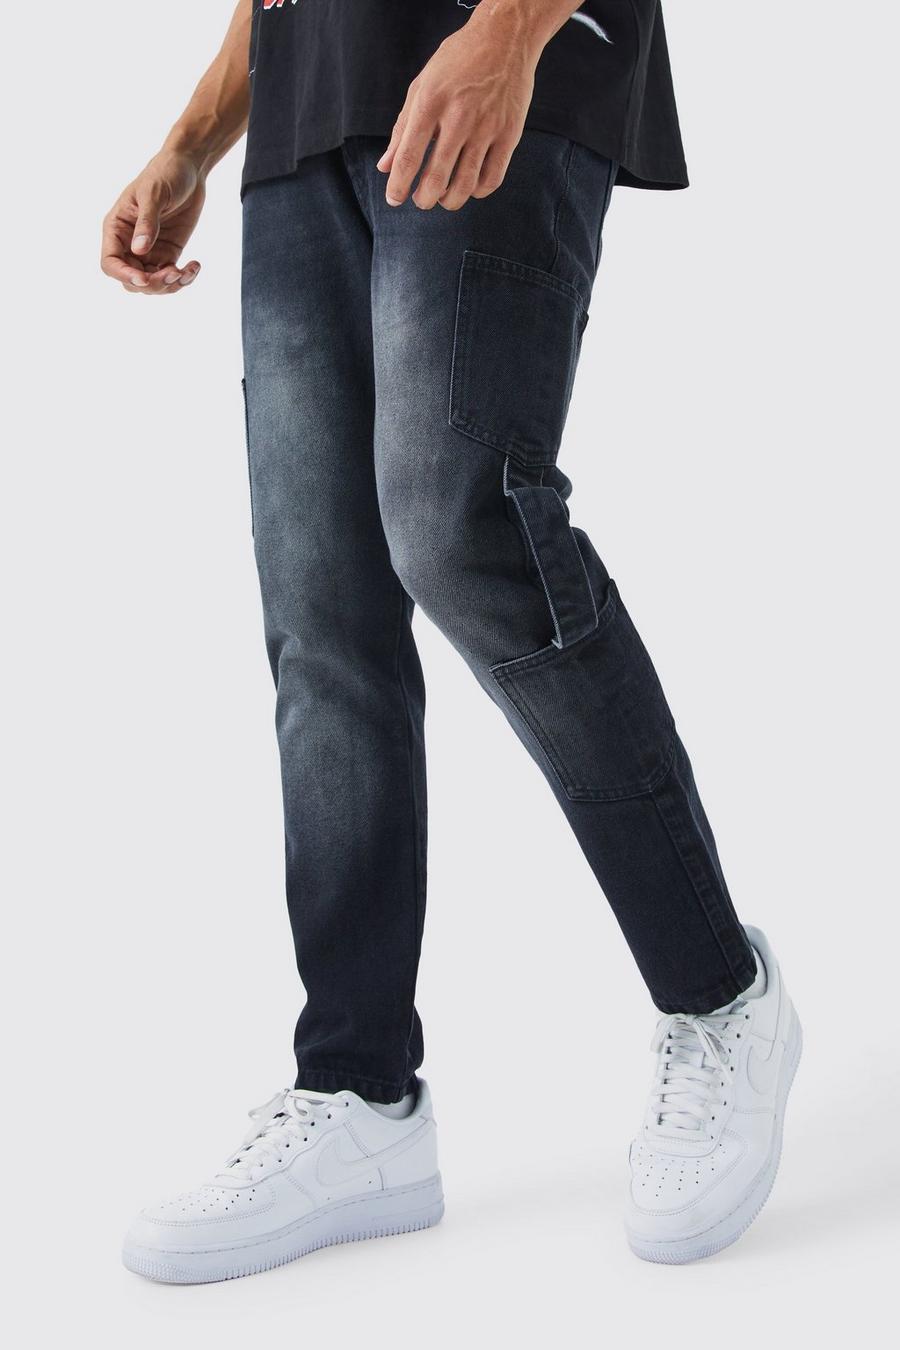 Jeans affusolati in denim rigido con strappi e spalline stile Cargo, Washed black